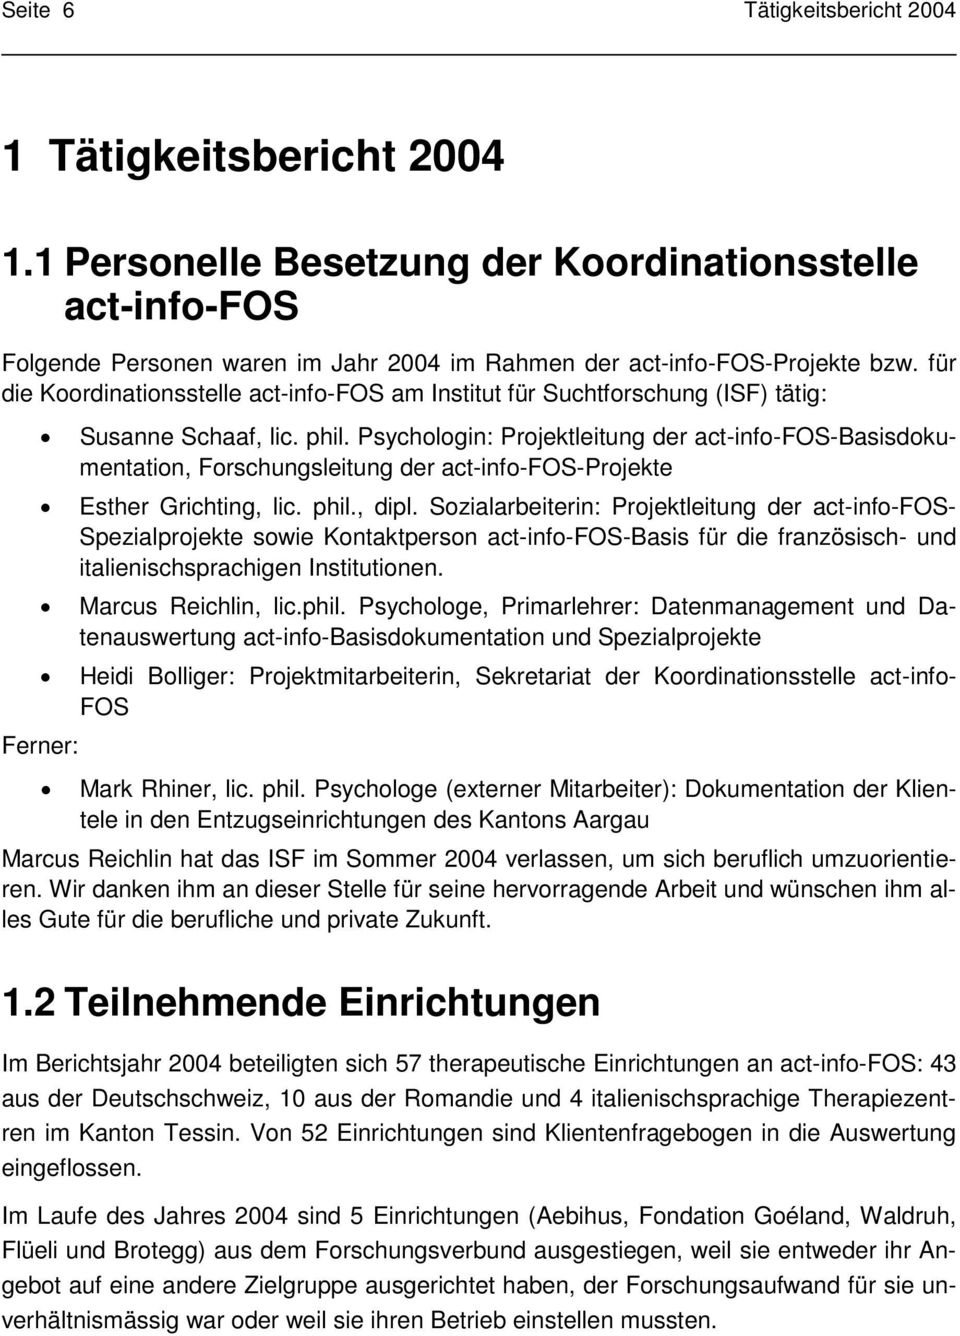 Psychologin: Projektleitung der act-info-fos-basisdokumentation, Forschungsleitung der act-info-fos-projekte Esther Grichting, lic. phil., dipl.